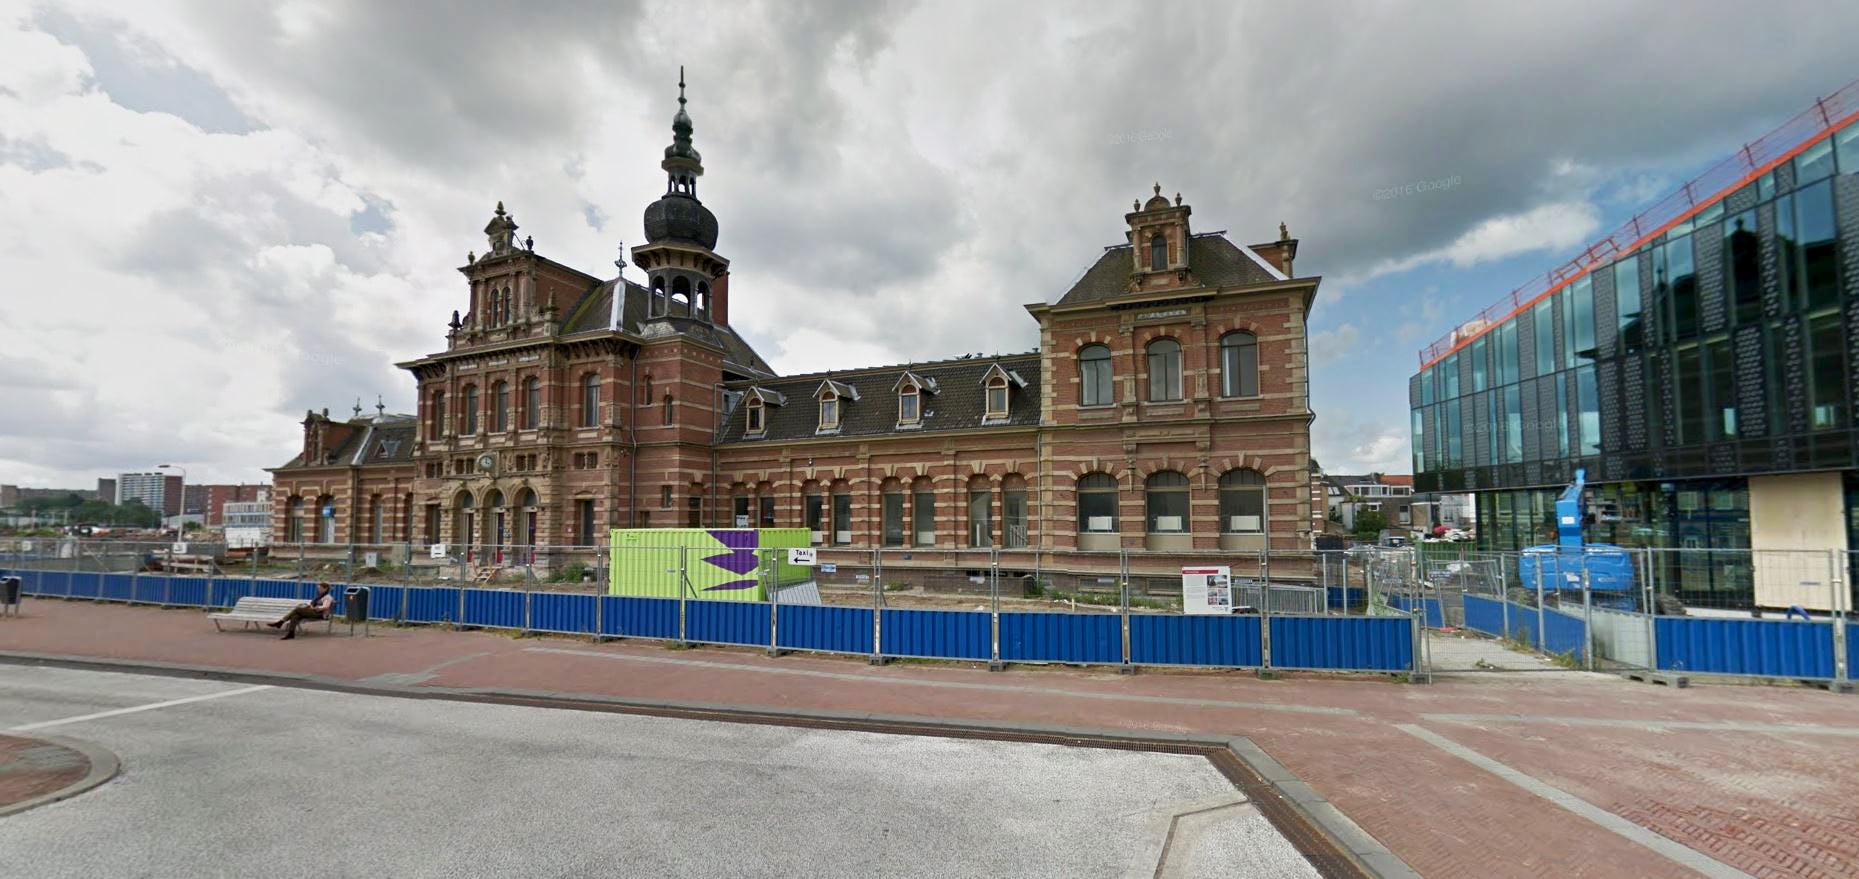 Braaksma & Roos transformeert oude Stationsgebouw Delft tot horeca